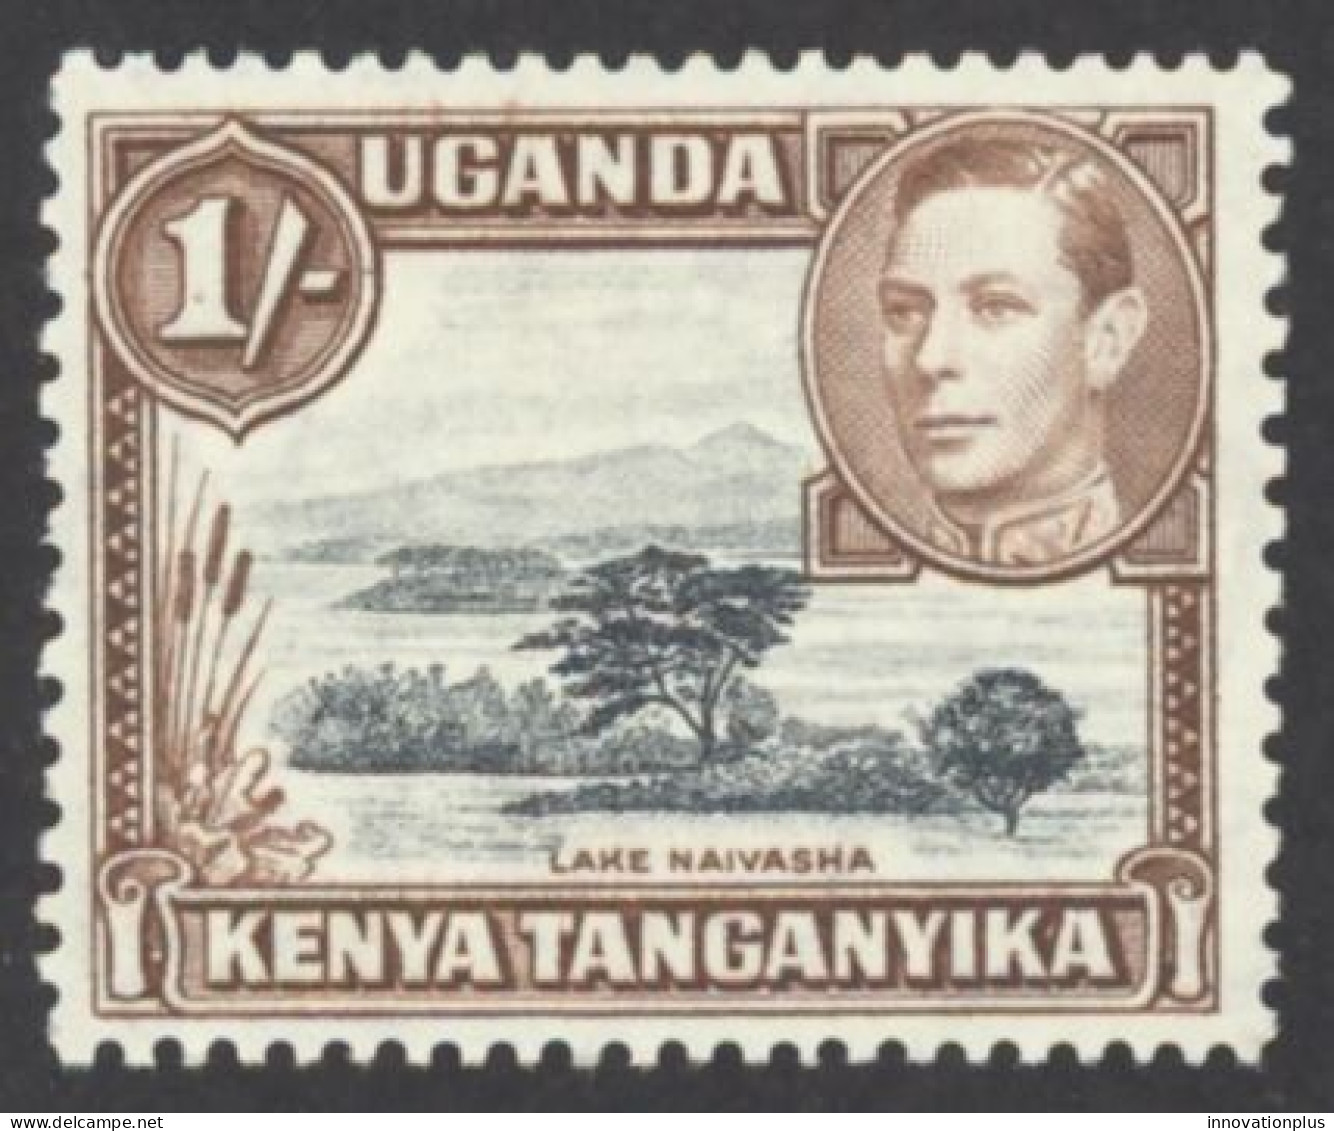 Kenya, Uganda, Tanzania Sc# 80 MH 1938-1954 1sh Definitives - Kenya, Uganda & Tanzania